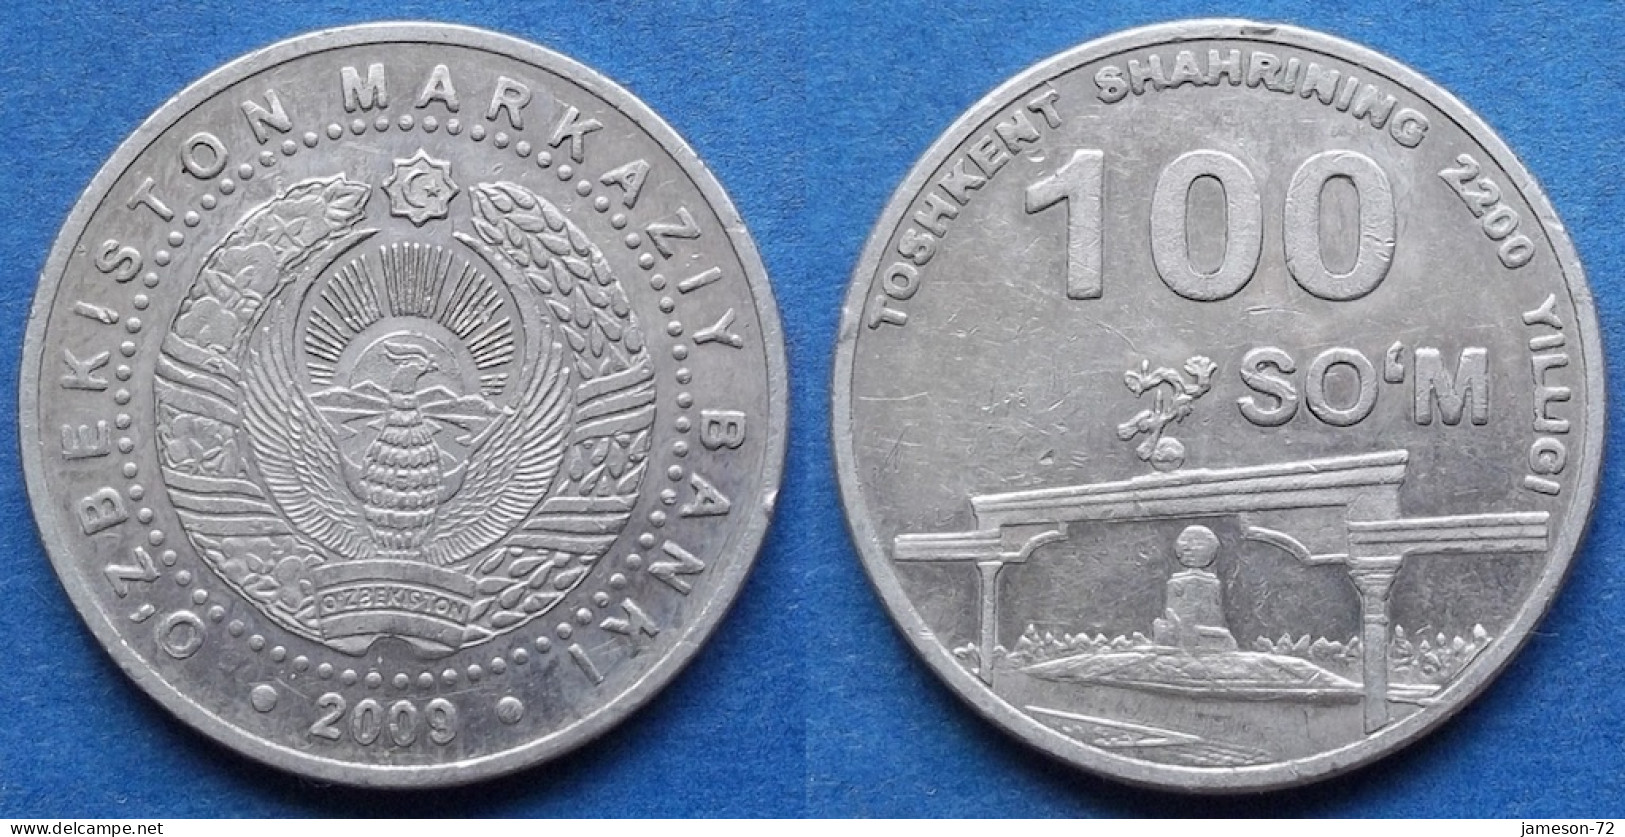 UZBEKISTAN - 100 So'm 2009 "Arch Of Independence" KM# 31 - Edelweiss Coins - Uzbenisktán